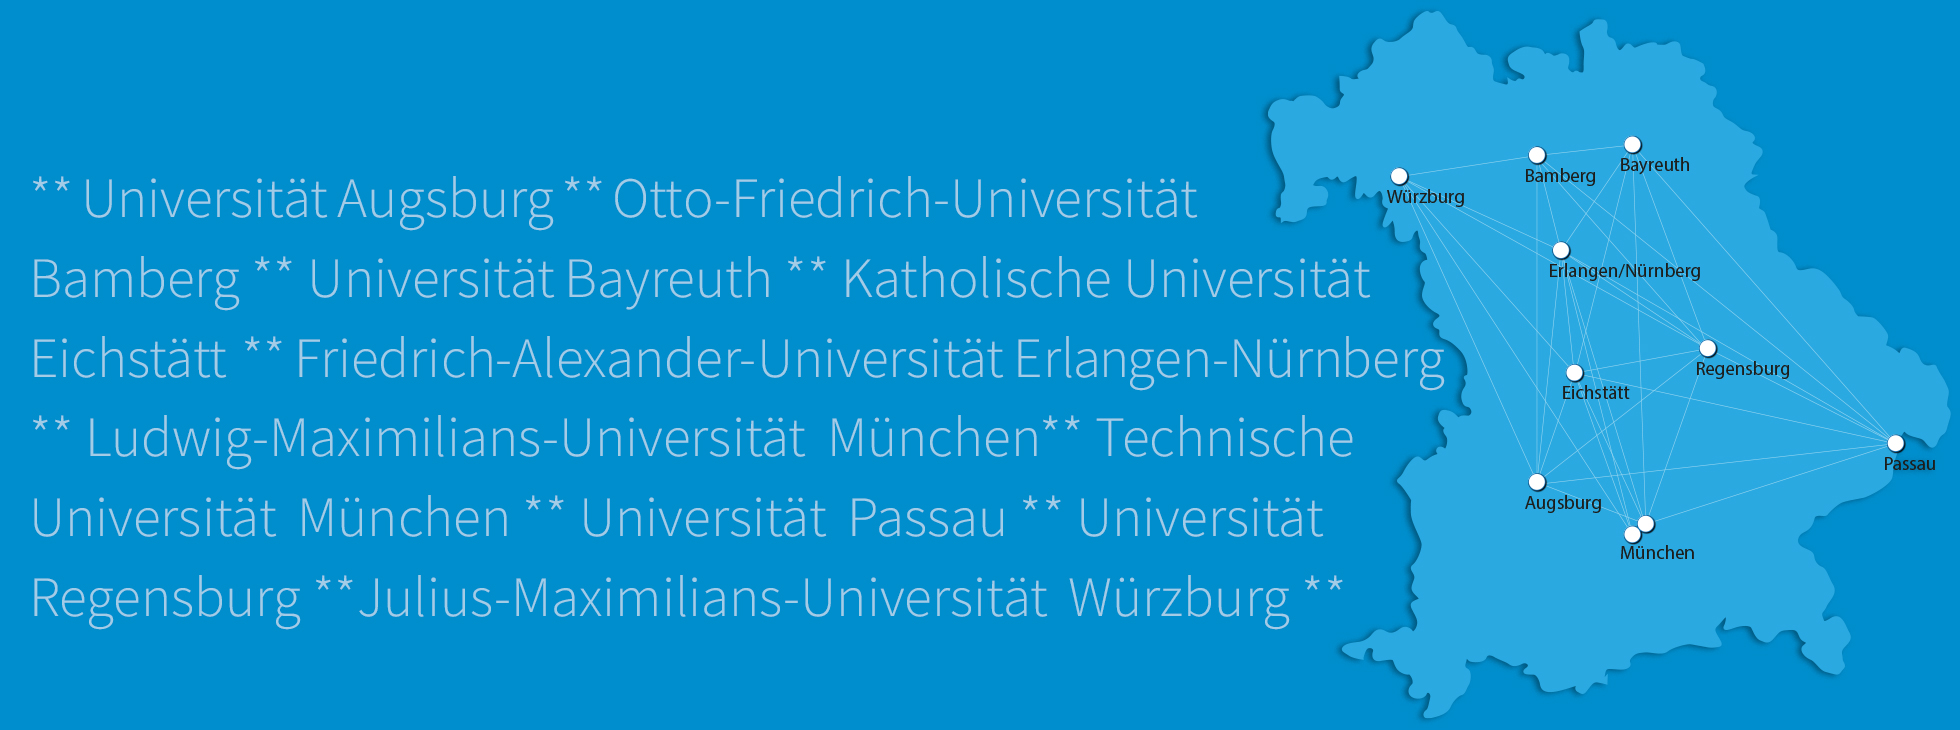 Bayernkarte mit den Universitätsstandorten und den Namen der Universitäten